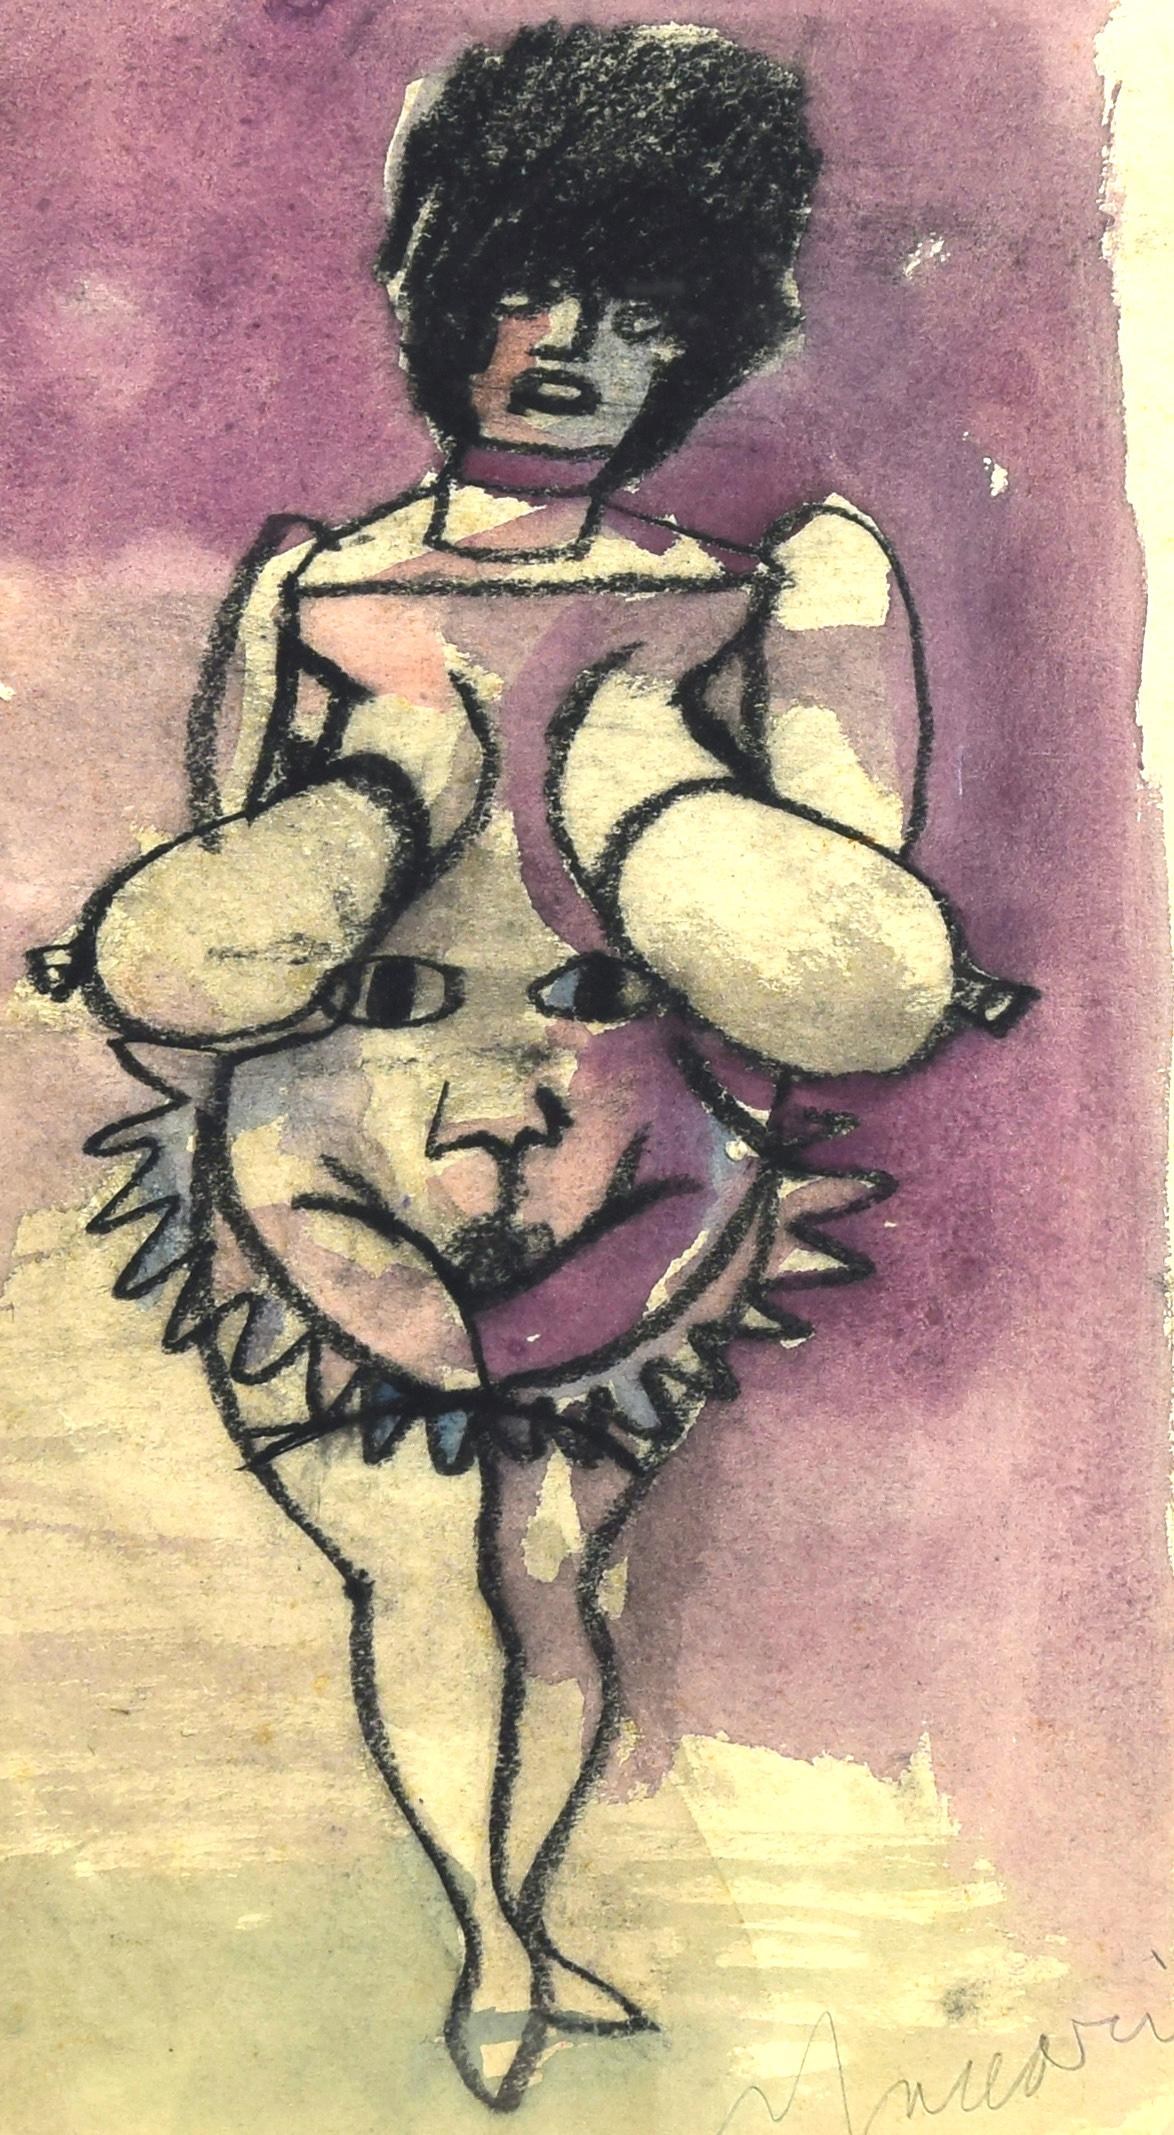 Provokation Frau ist ein Original-Kunstwerk von Mino Maccari aus den 1960er Jahren.

Aquarell-, Kohle- und Pastellzeichnungen. 

Vom Künstler am unteren Rand handsigniert.

Handschriftliche Notiz des Künstlers.

Inklusive Rahmen (54,5 x 1,5 x 39,5